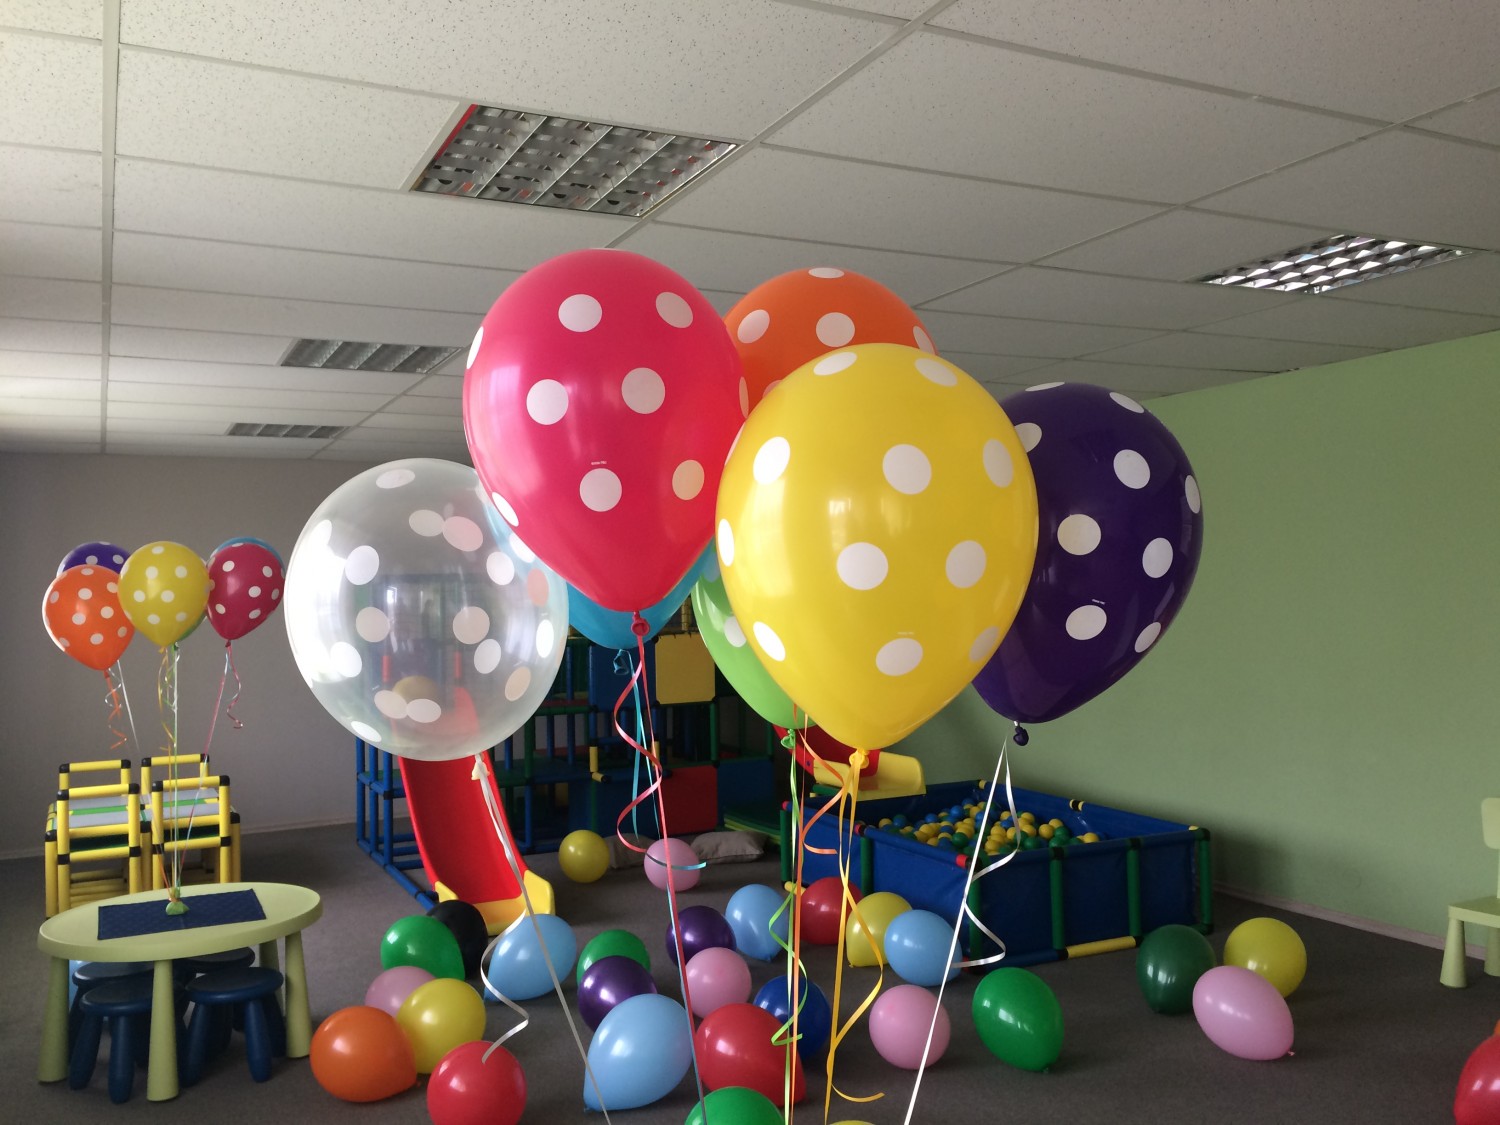 Vai zināji, ka bērnu centrā PALLA ir iespēja iegādāties balonus pildītus ar hēliju!?